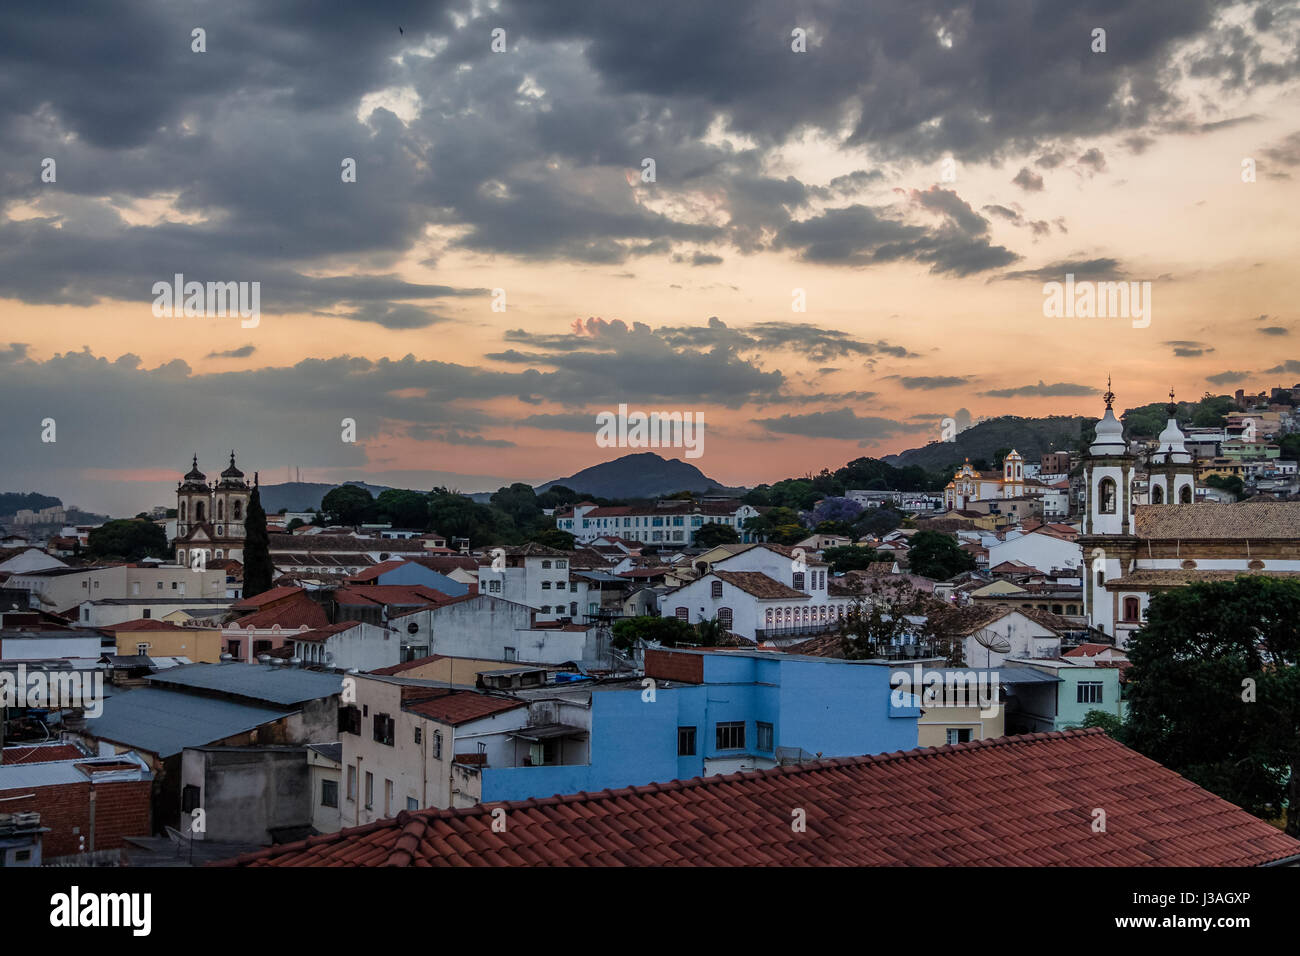 Luftaufnahme von Sao Joao del Rei bei Sonnenuntergang - Sao Joao del Rei, Minas Gerais, Brasilien Stockfoto